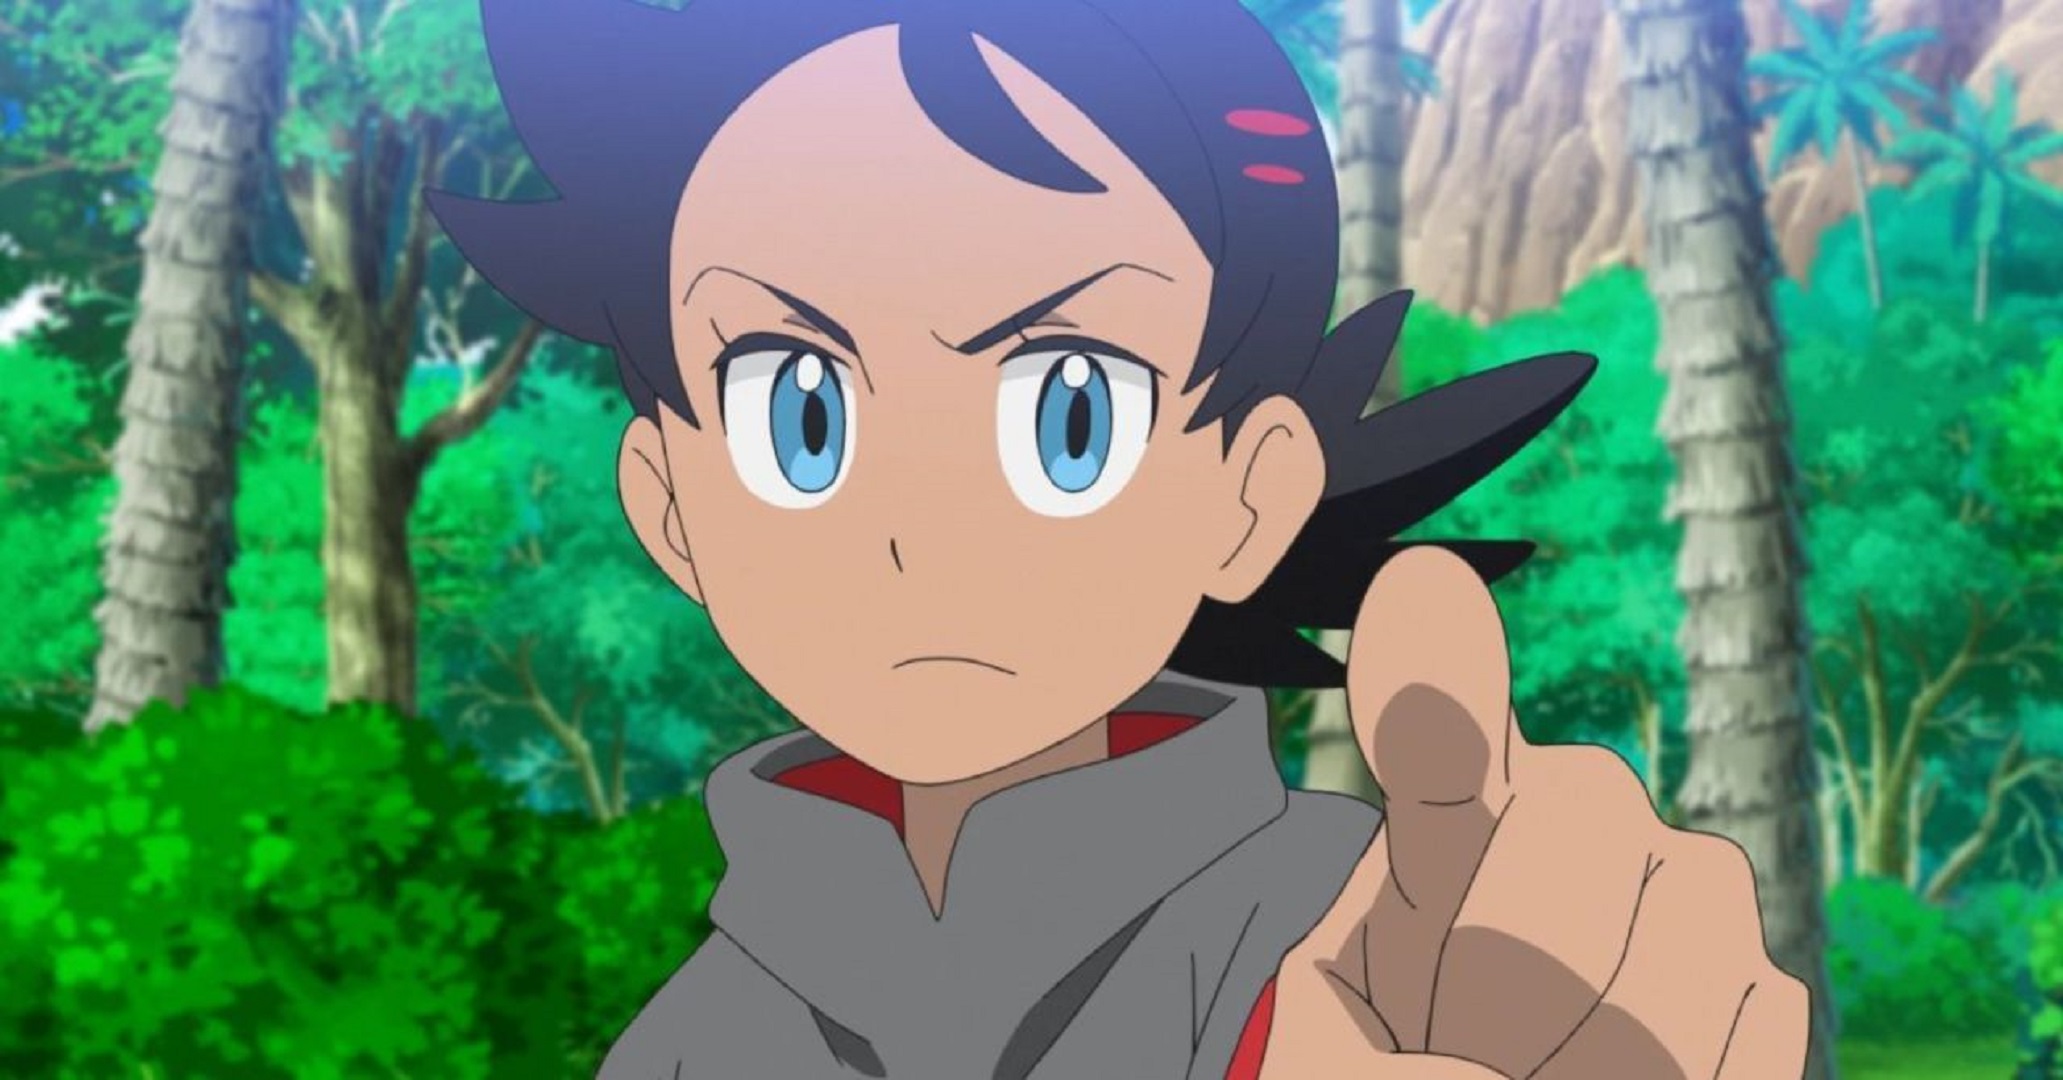 Fãs ficam extremamente chocados com a nova captura de Go no anime de Pokémon